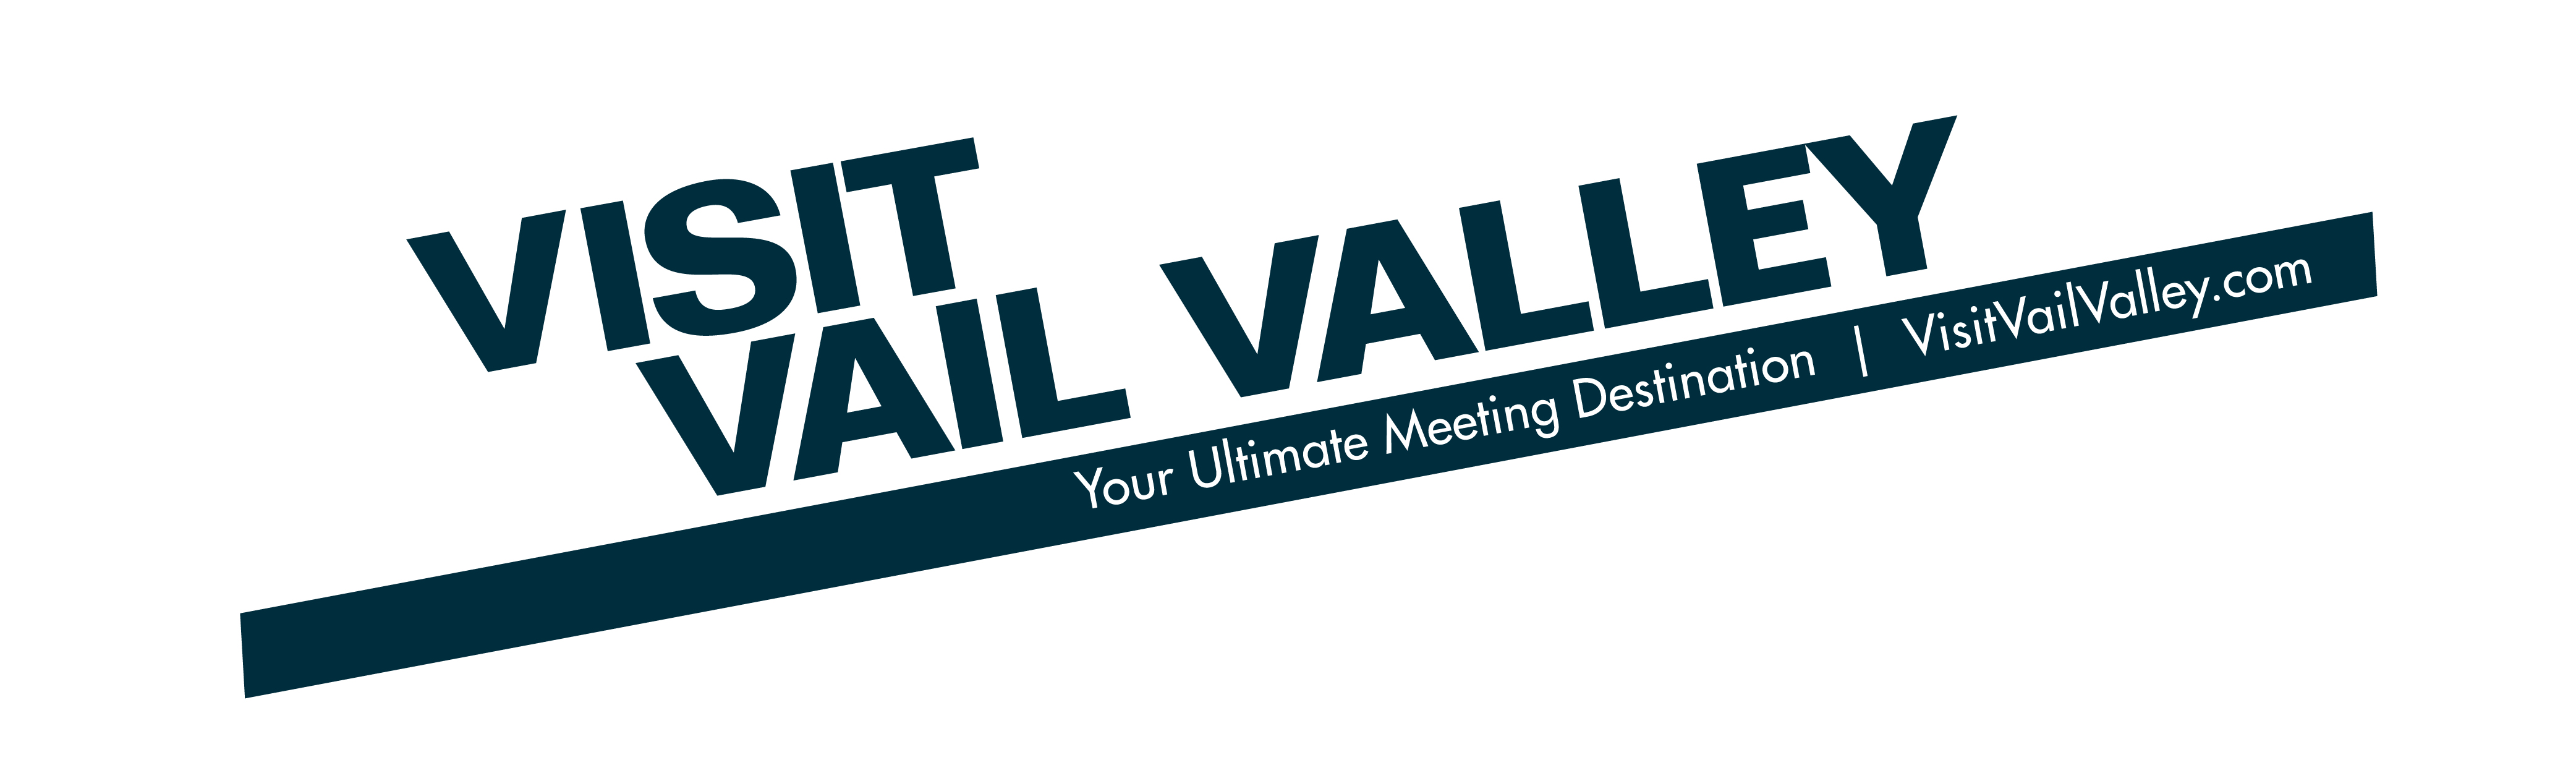 Visit Vail Valley logo